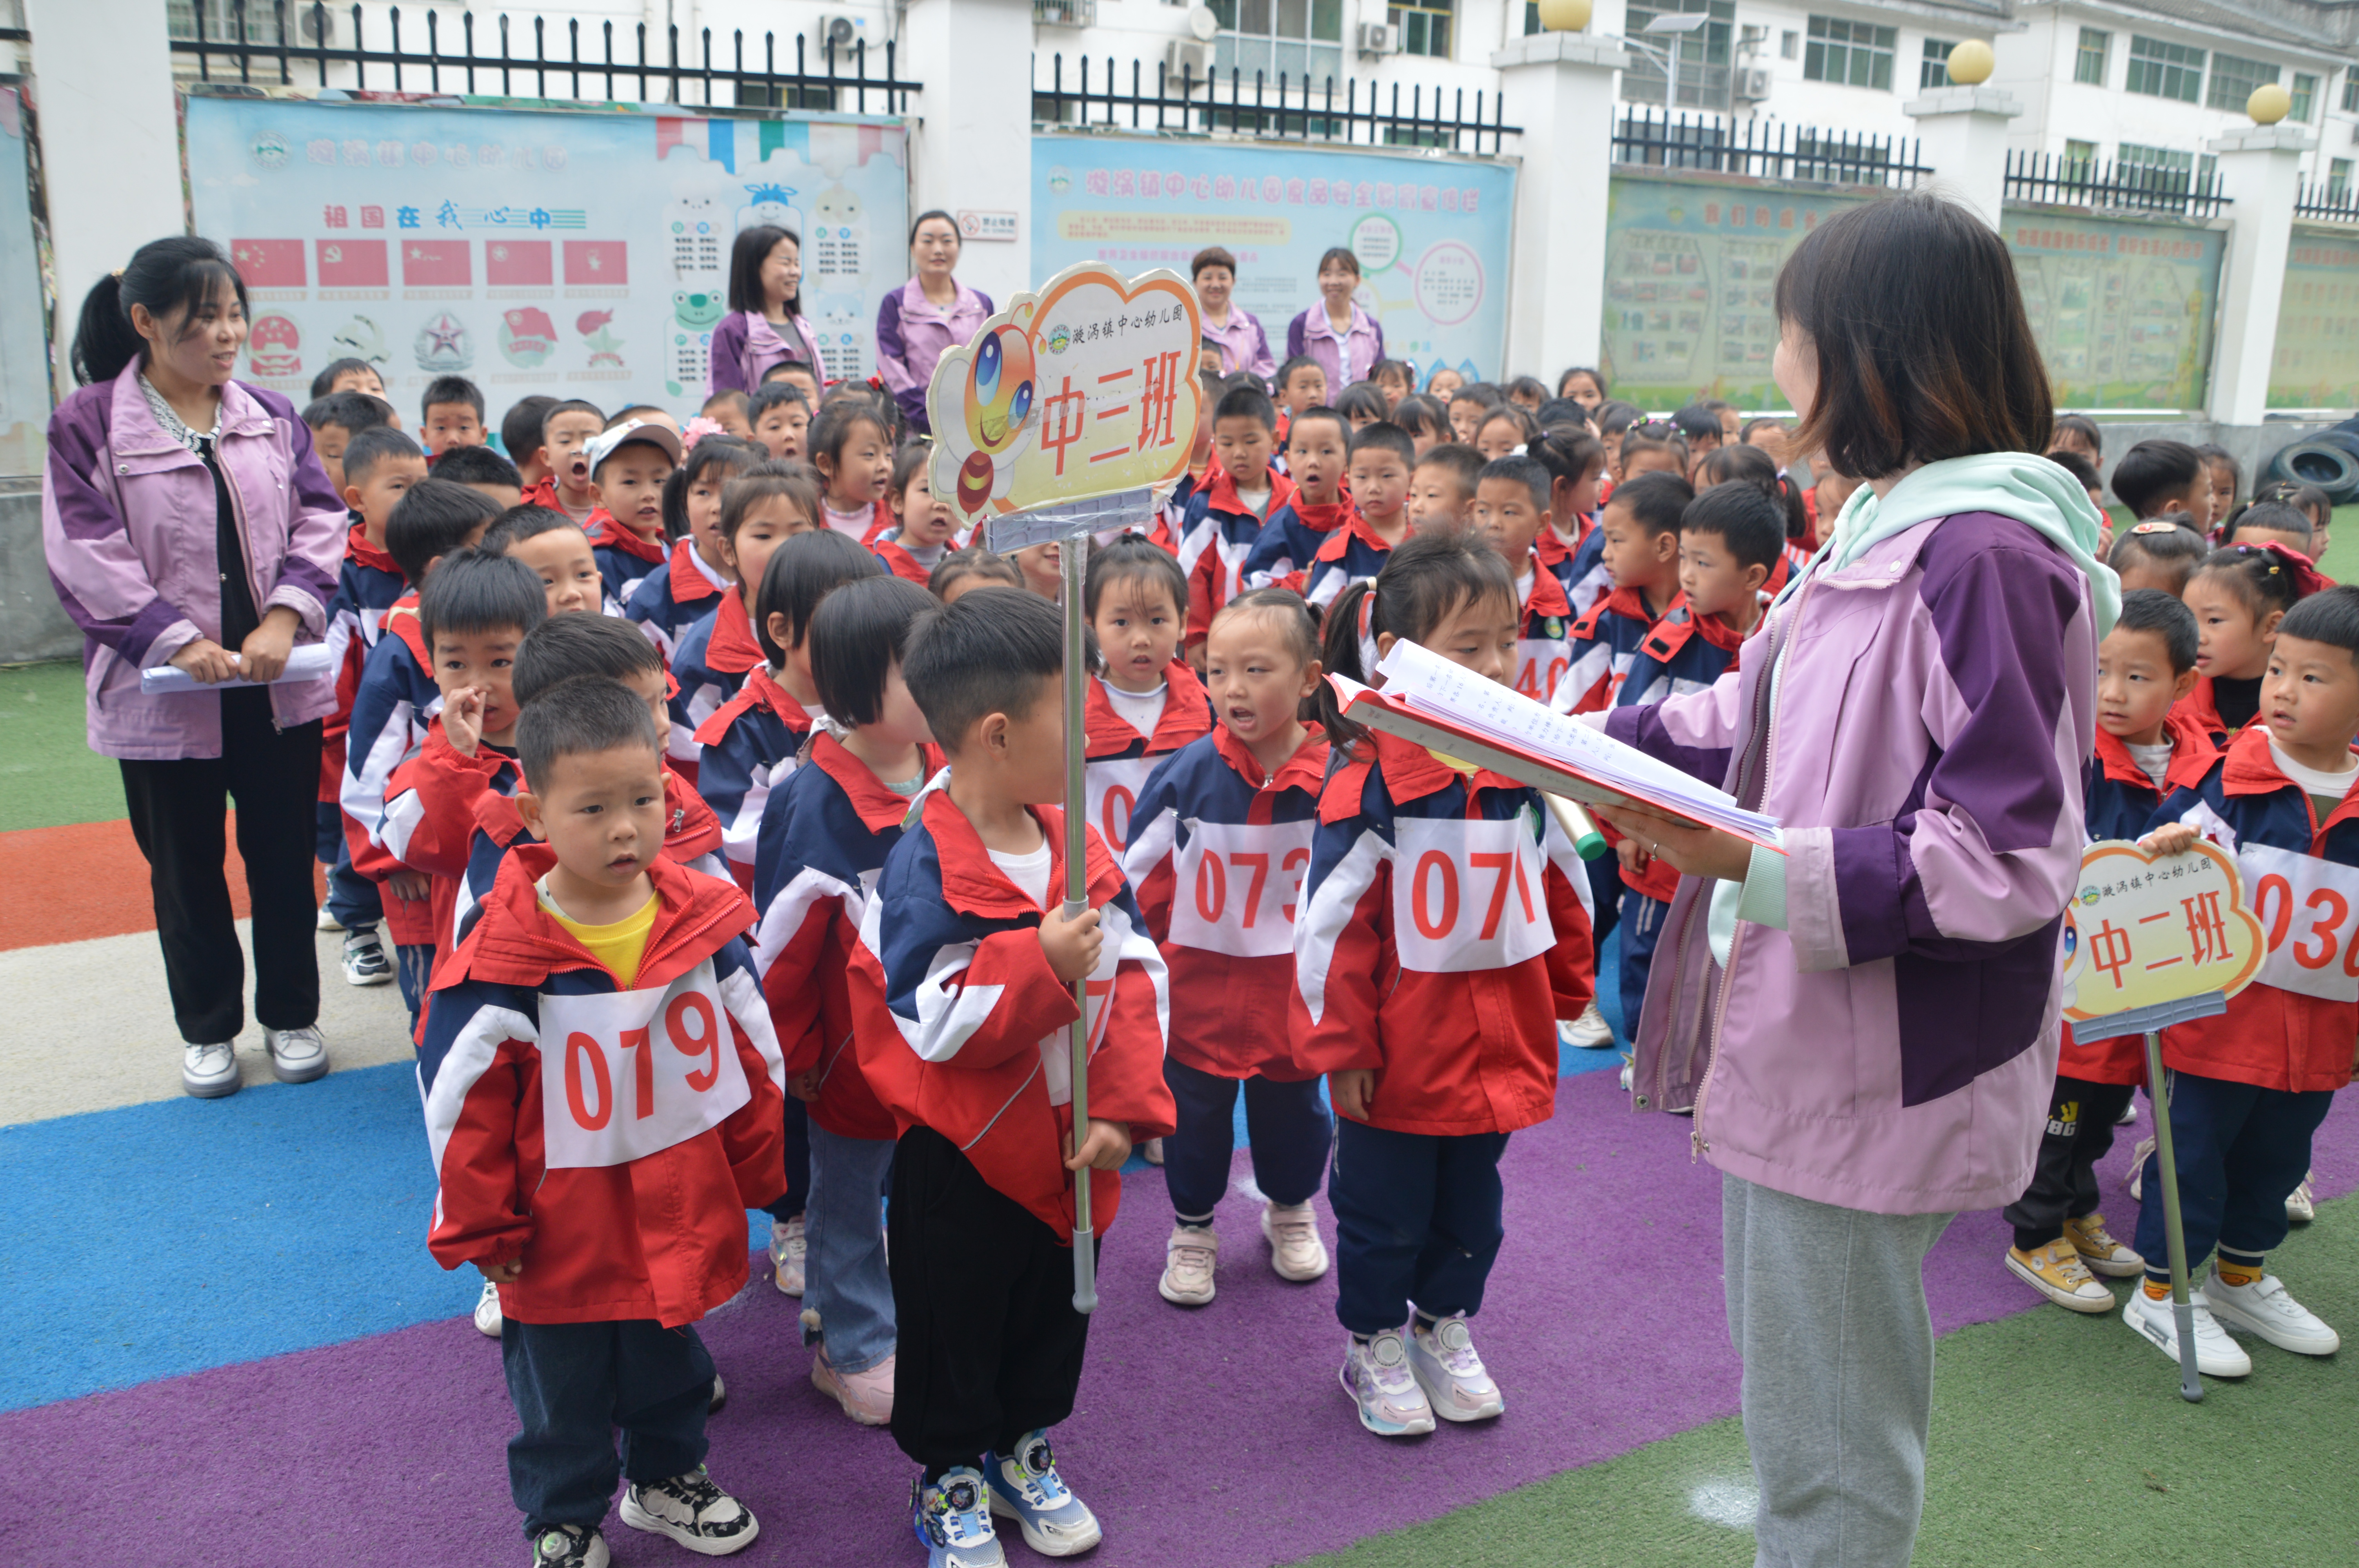 汉阴县漩涡镇中心幼儿园中班年级组开展春季趣味运动会